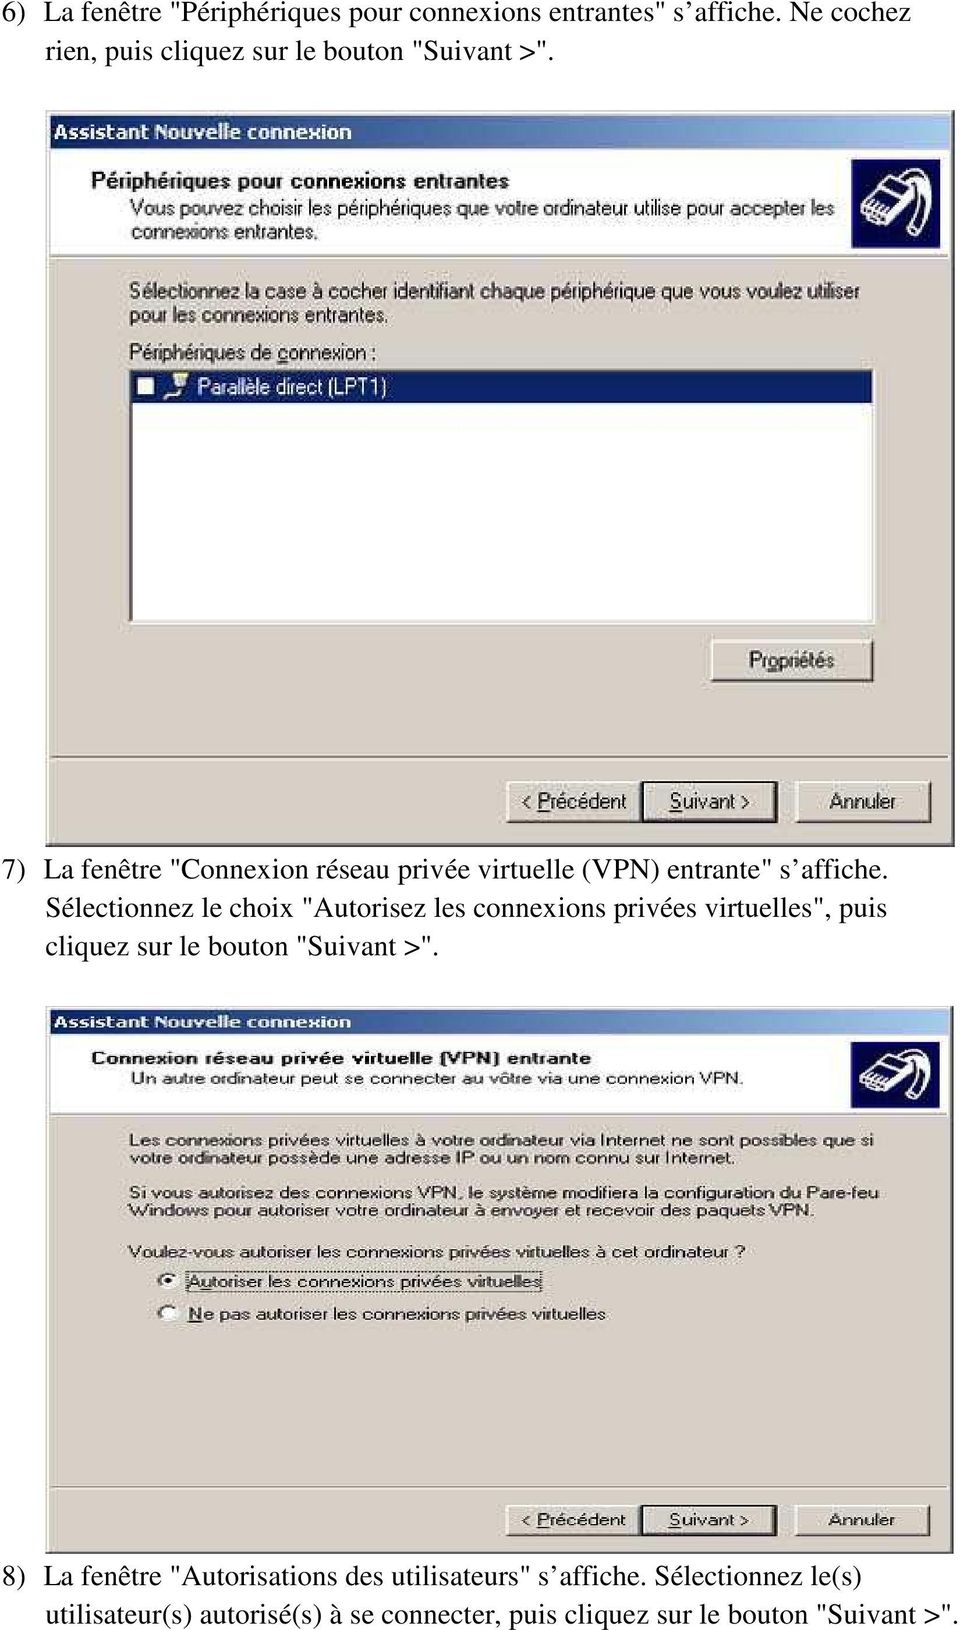 7) La fenêtre "Connexion réseau privée virtuelle (VPN) entrante" s affiche.